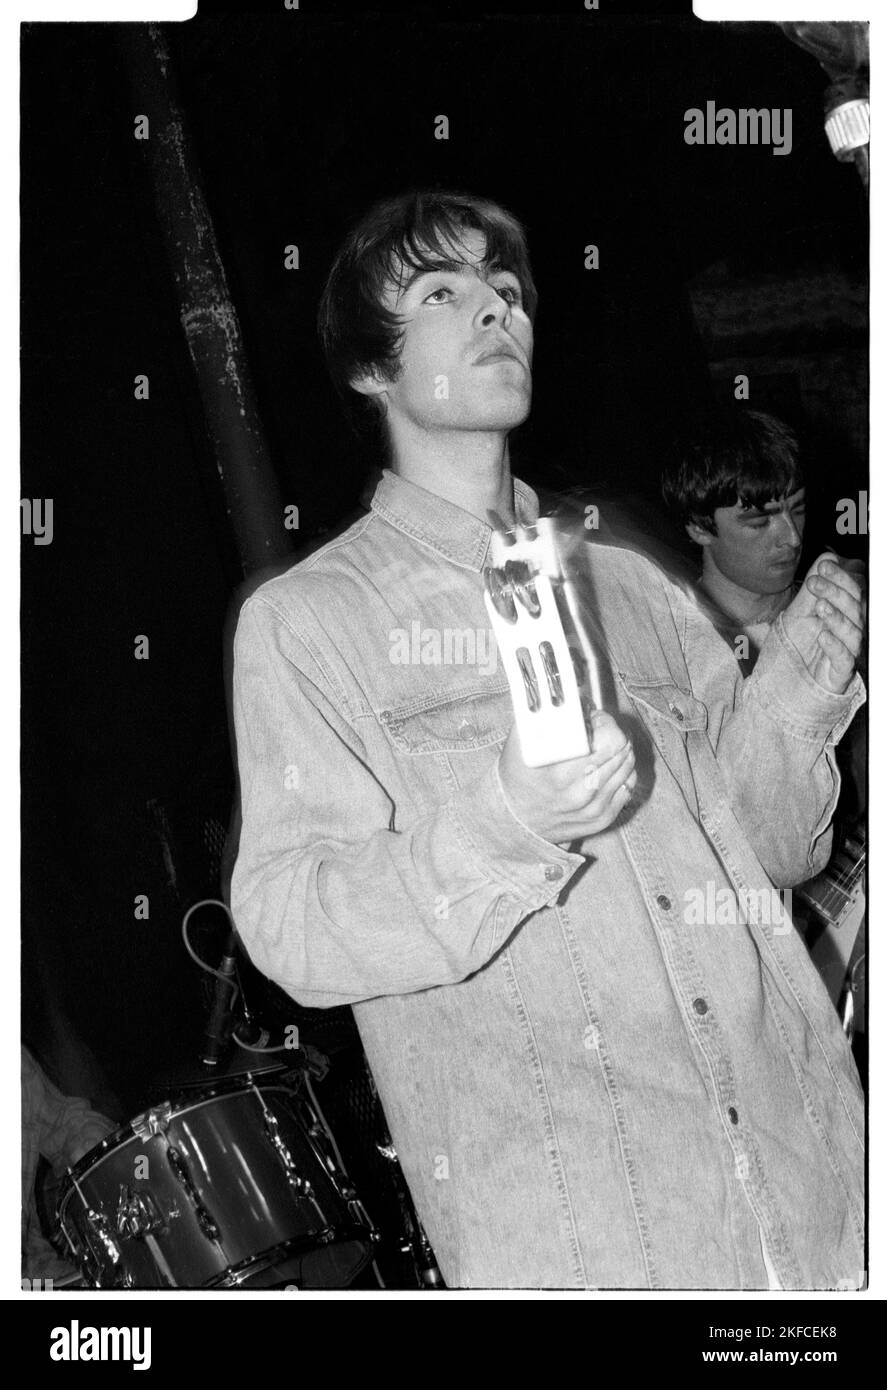 OASIS, ERSTE NATIONALE TOUR, 1994: Liam Gallagher von Oasis at the Fleece and Firkin in Bristol, England, März 30 1994. Bei diesem frühen Auftritt spielte die legendäre Band als Unterstützung für eine weitere aufstrebende Indie-Gruppe namens Whiteout. Foto: Rob Watkins Stockfoto